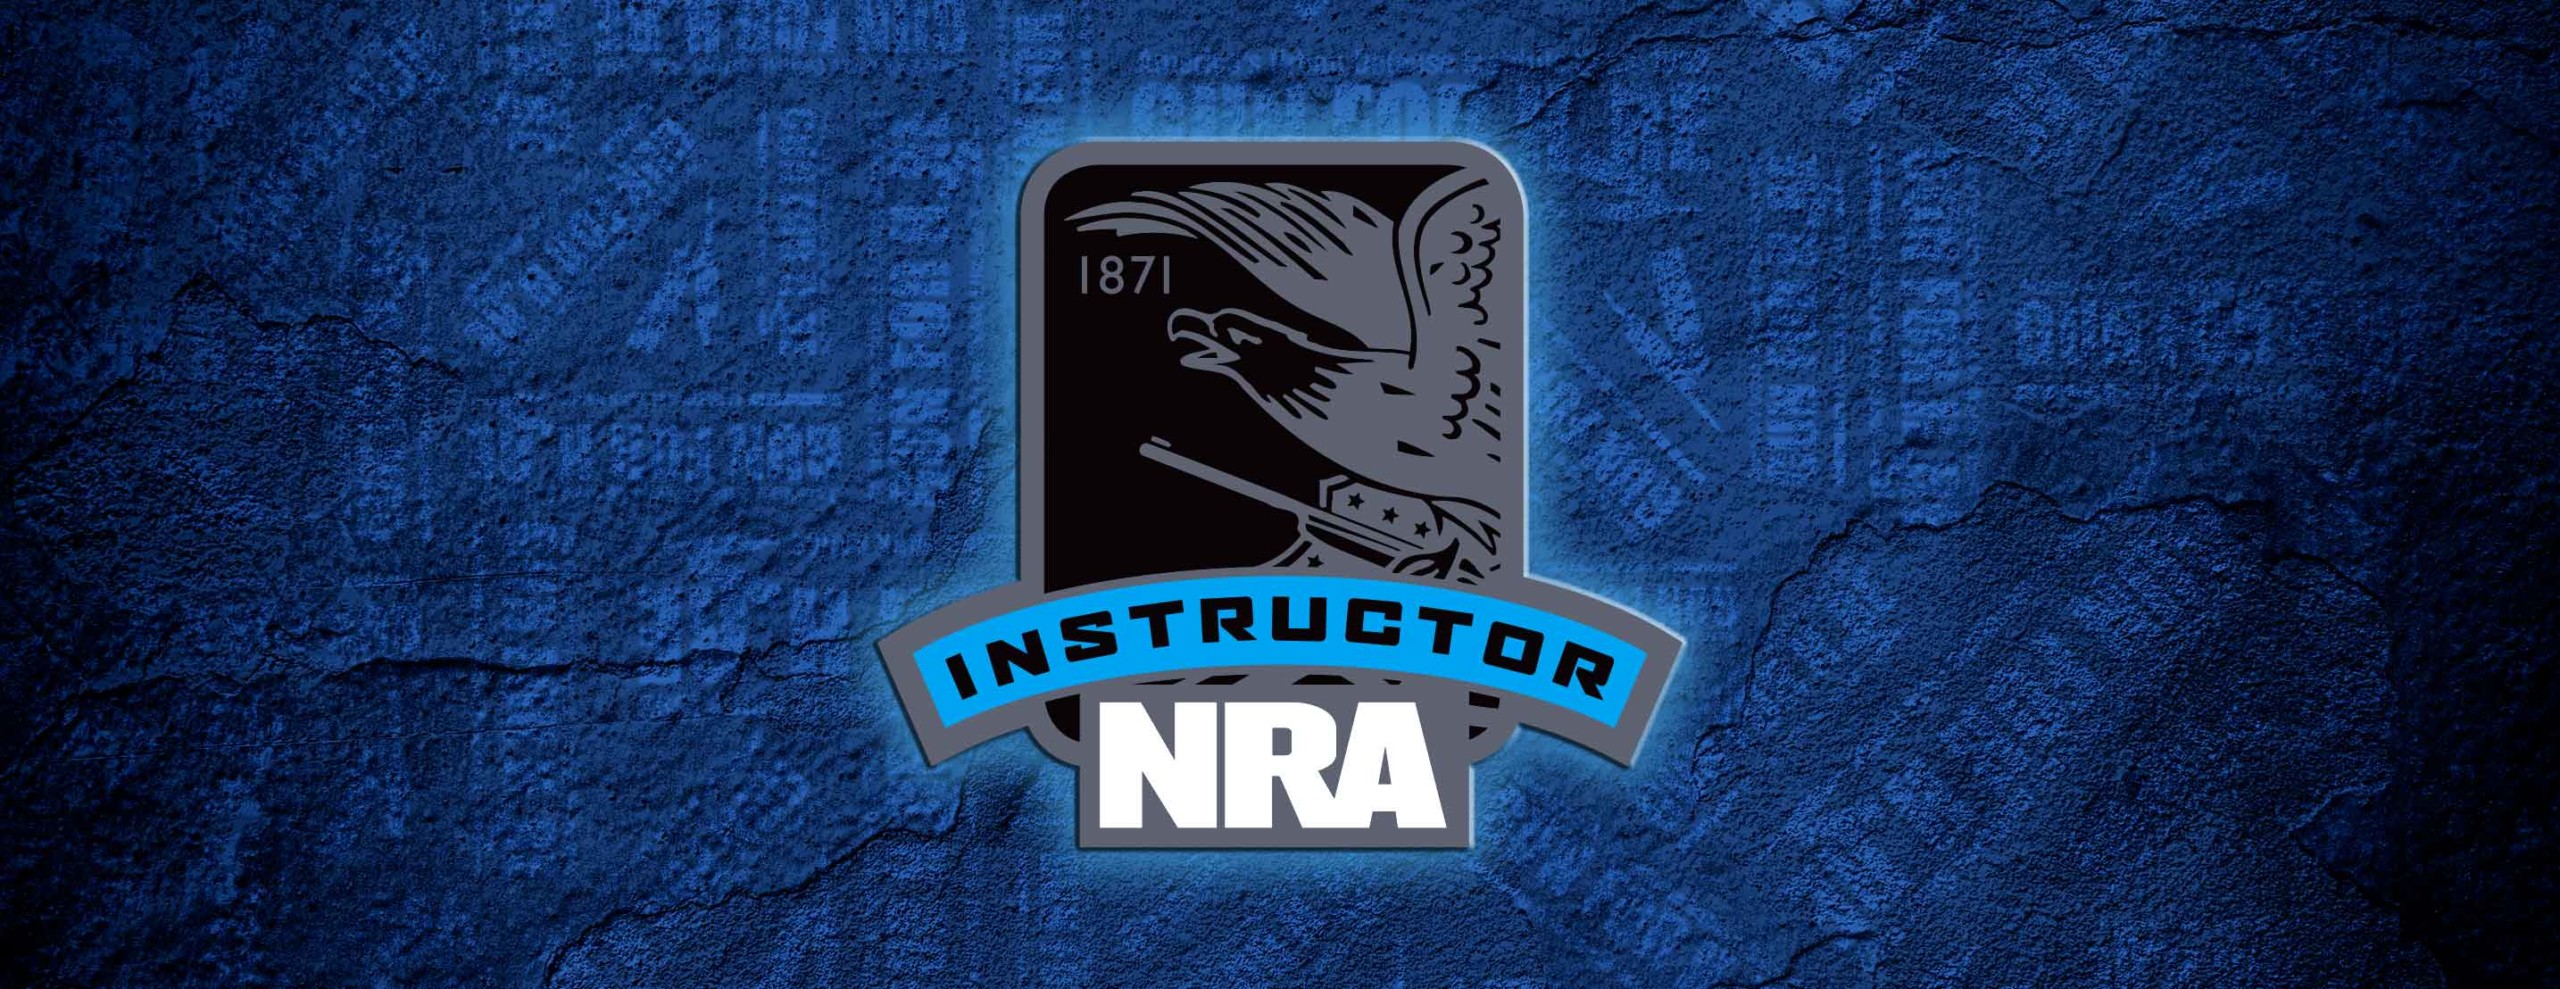 NRAinstructor scaled - NRA Basic CCW Instructor Training